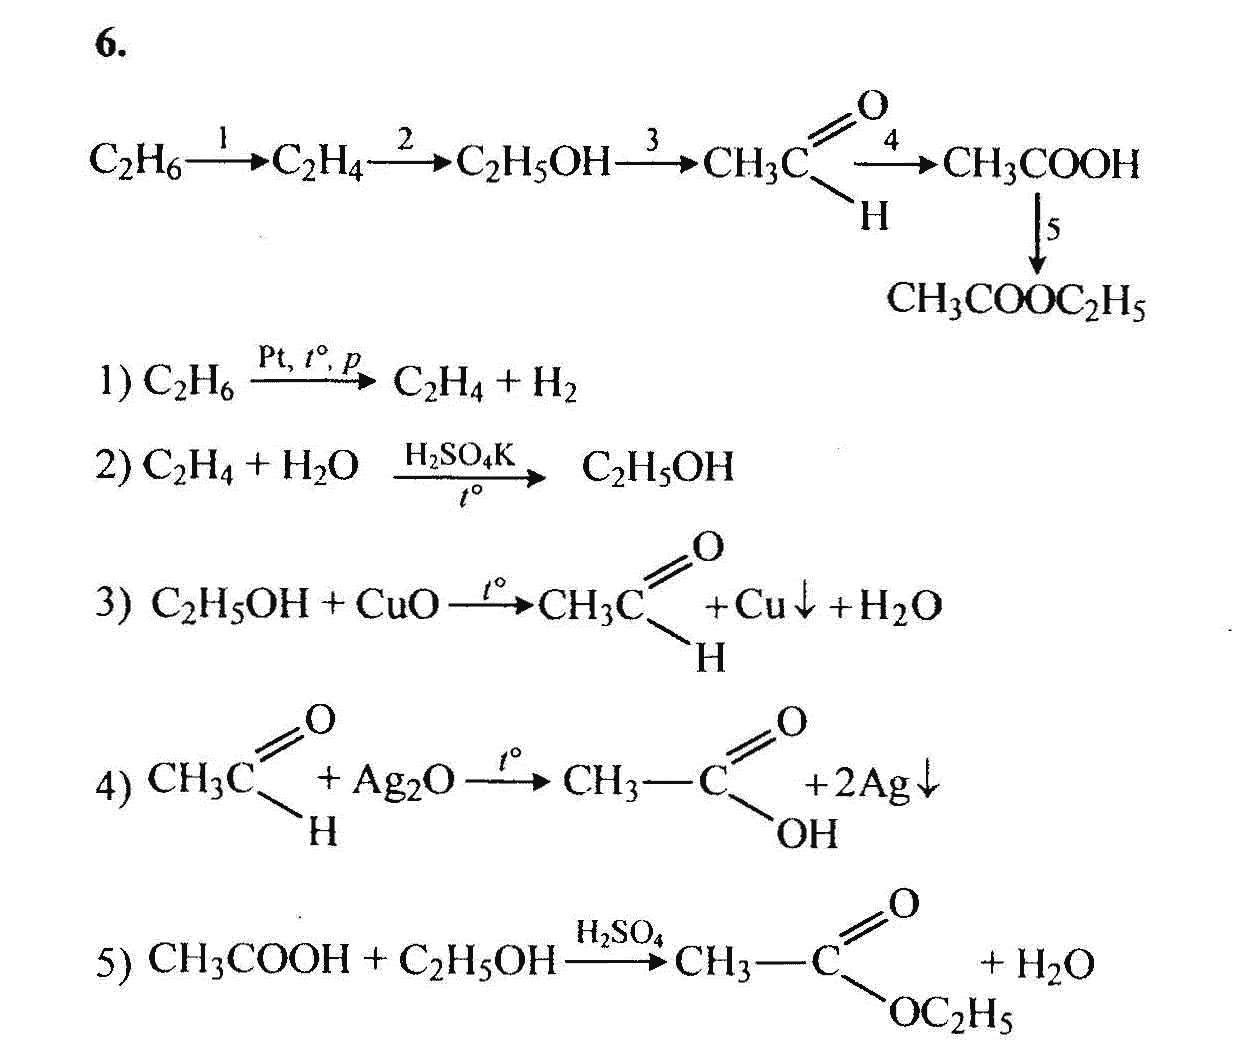 Превращение этаналь этановая кислота. Цепочки превращений по теме альдегиды и кетоны. Цепочки на альдегиды. Цепочки по теме альдегиды и кетоны.